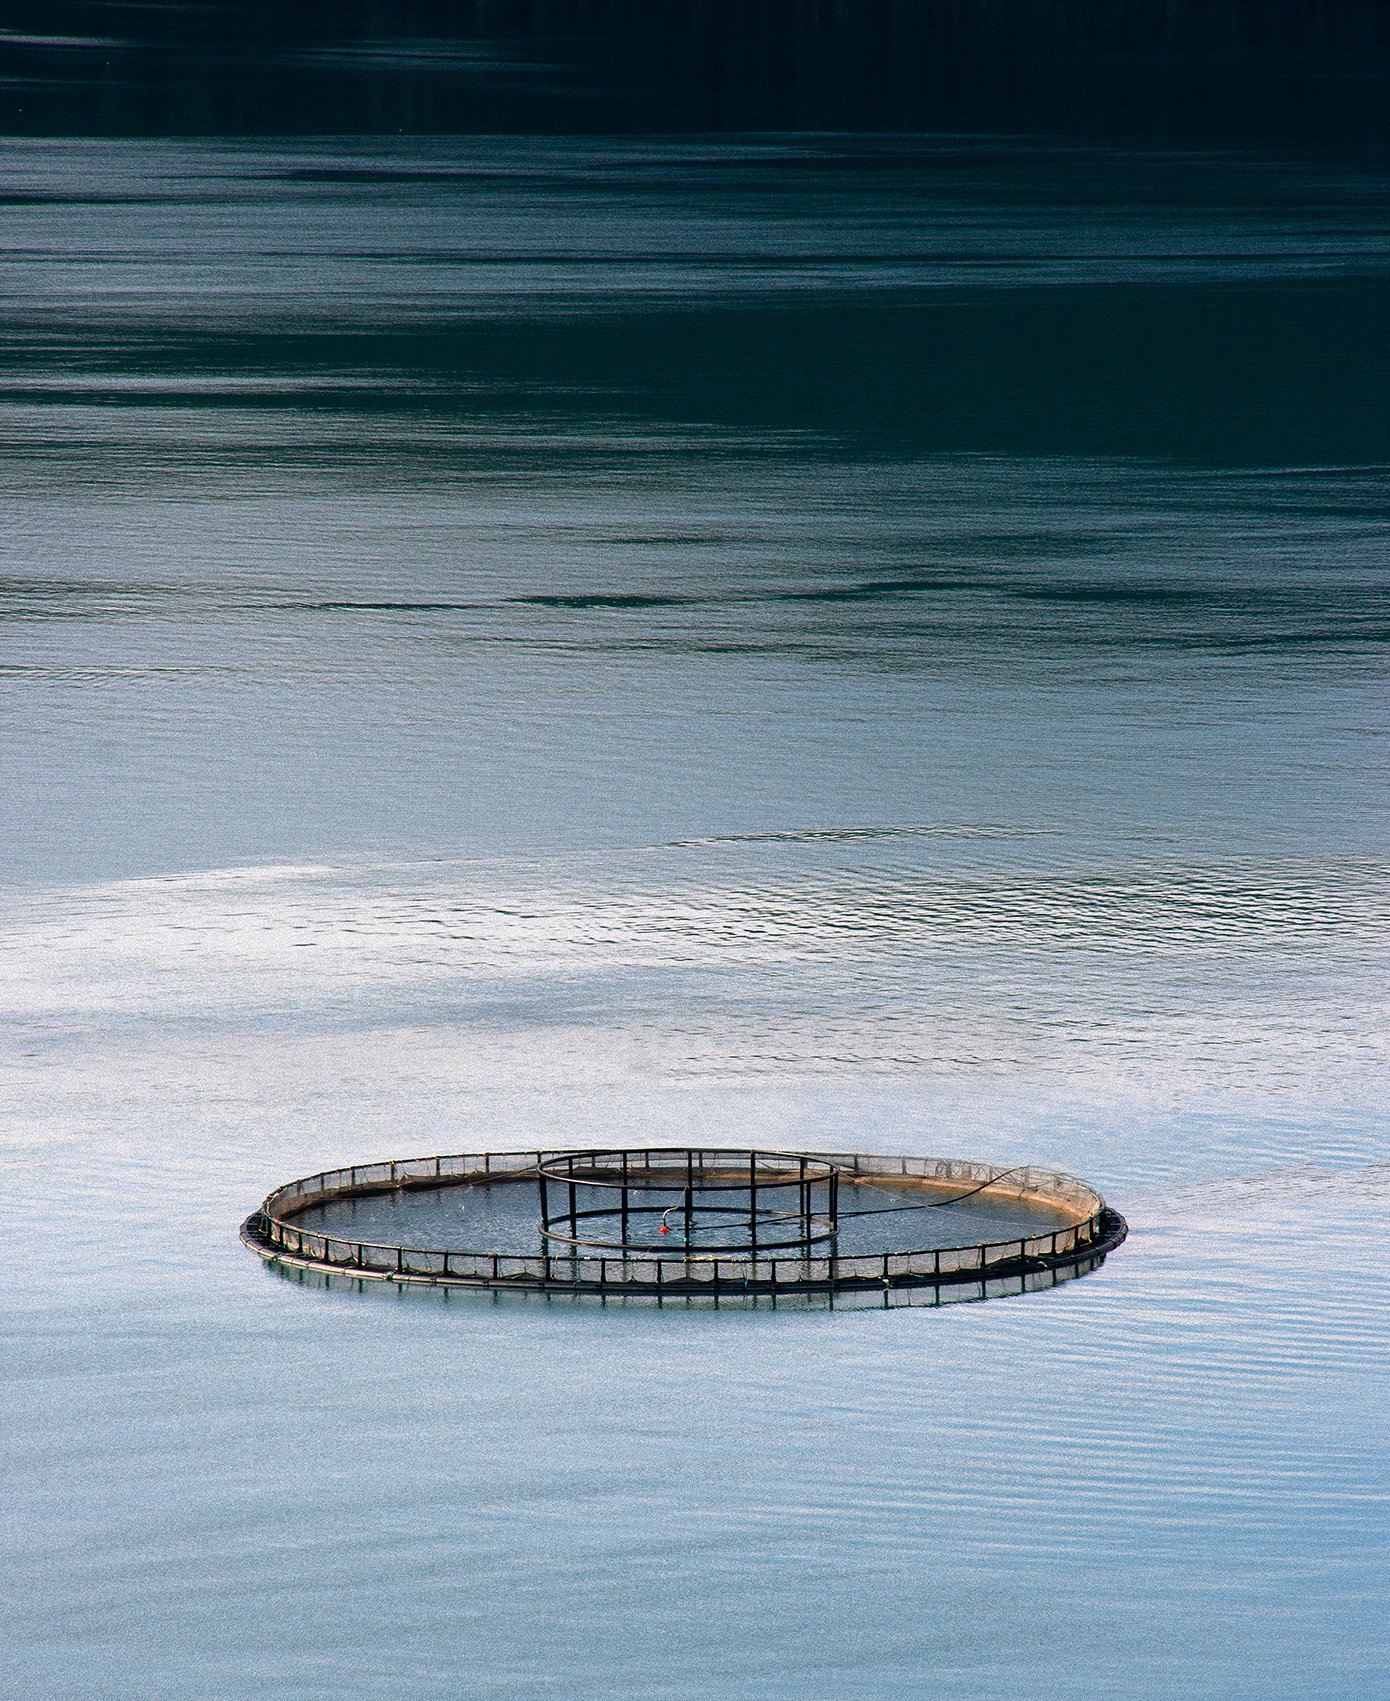 Image of Salmon Fishing Ring, Norway